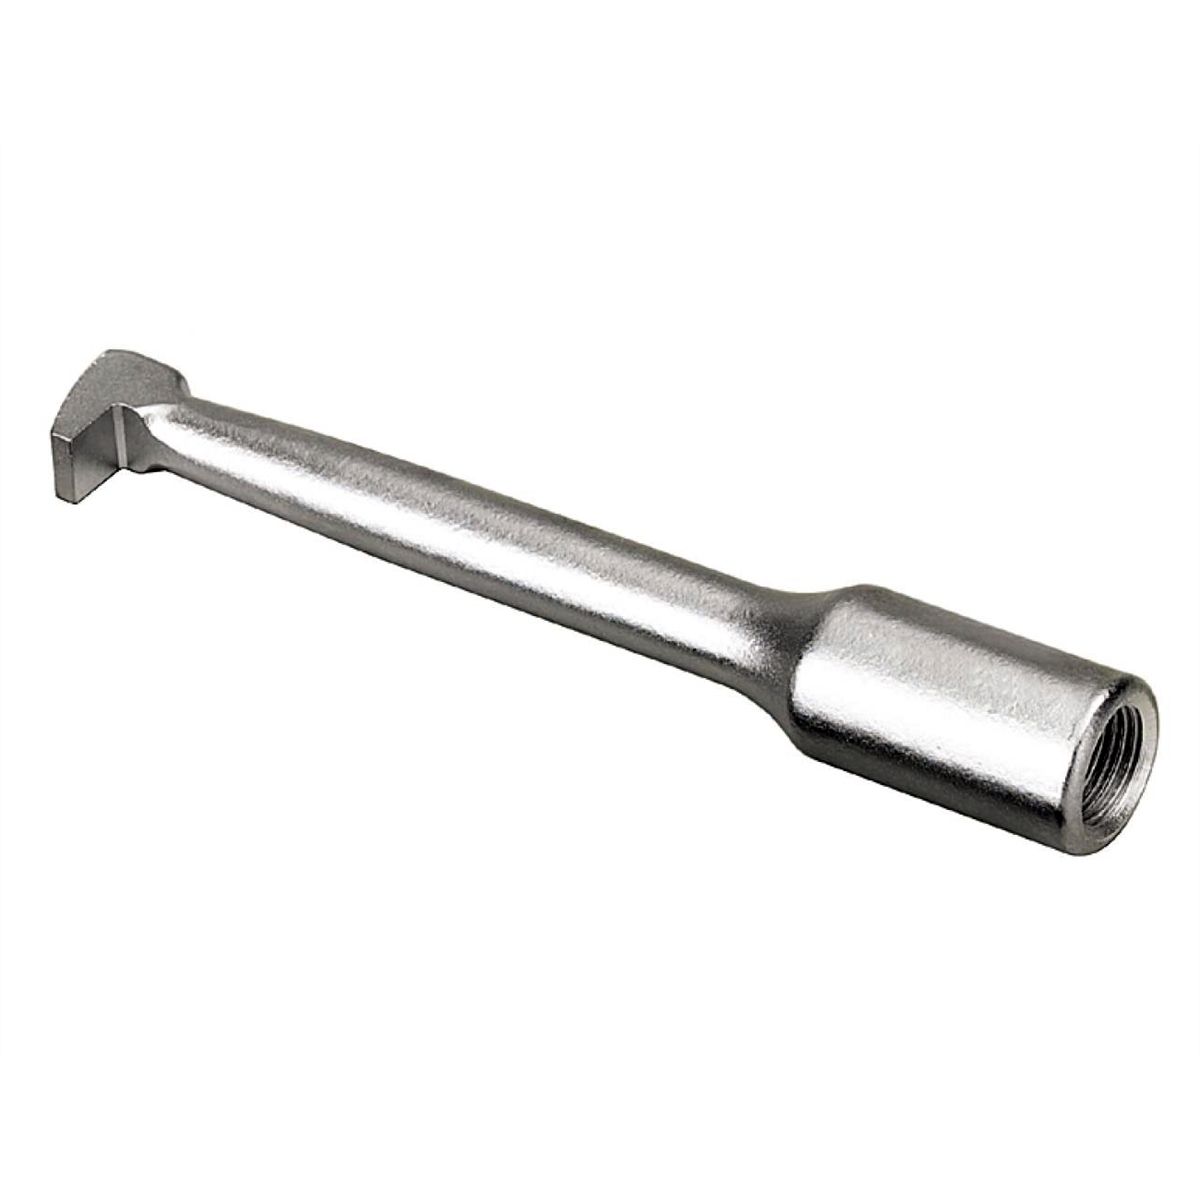 Details about   Slammer Hammer  puller Heavy equipment repair irwin vise grip slide puller tool 